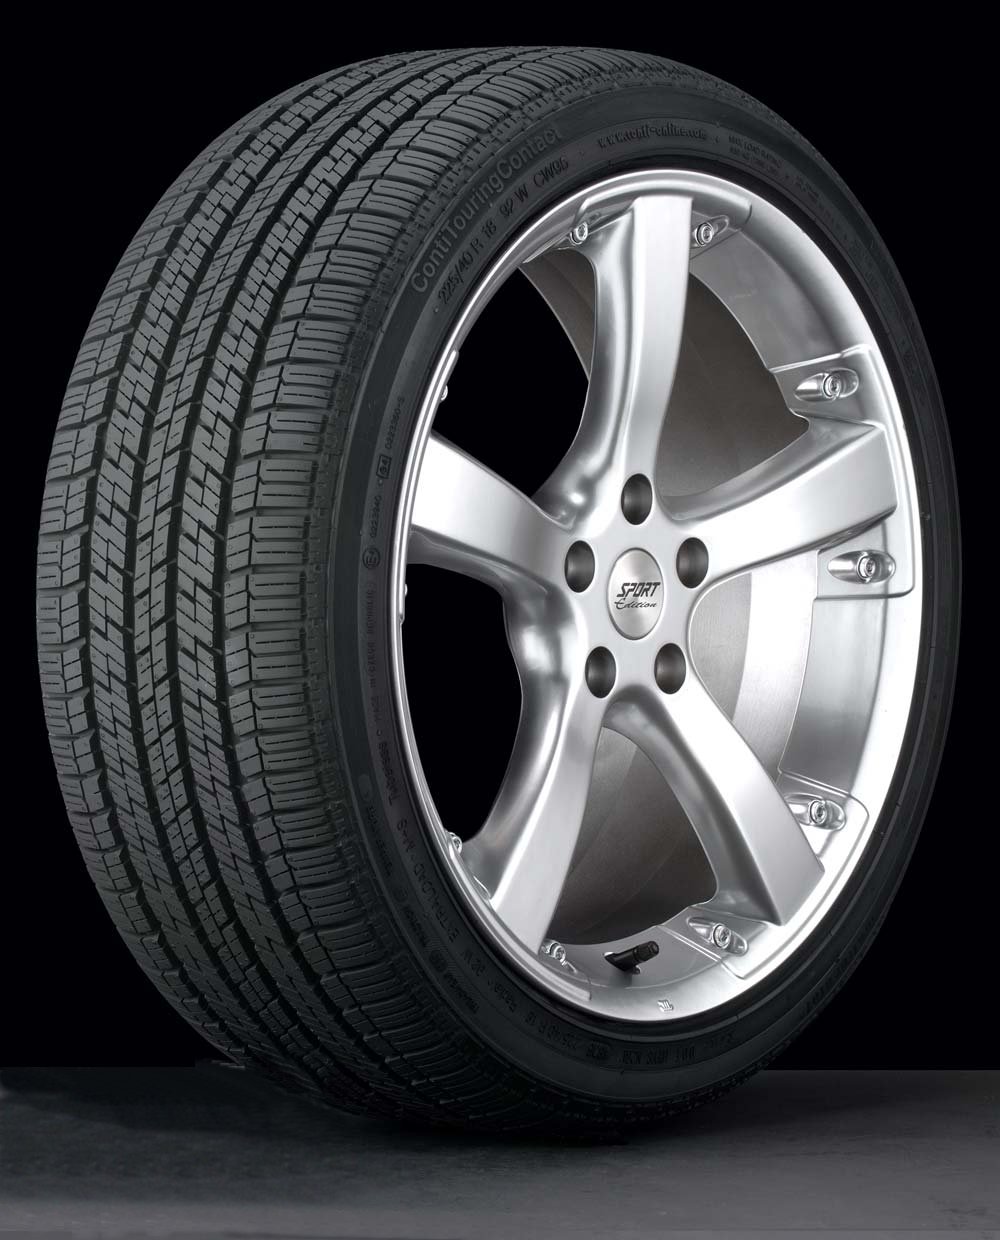 Chrysler crossfire winter tires #1